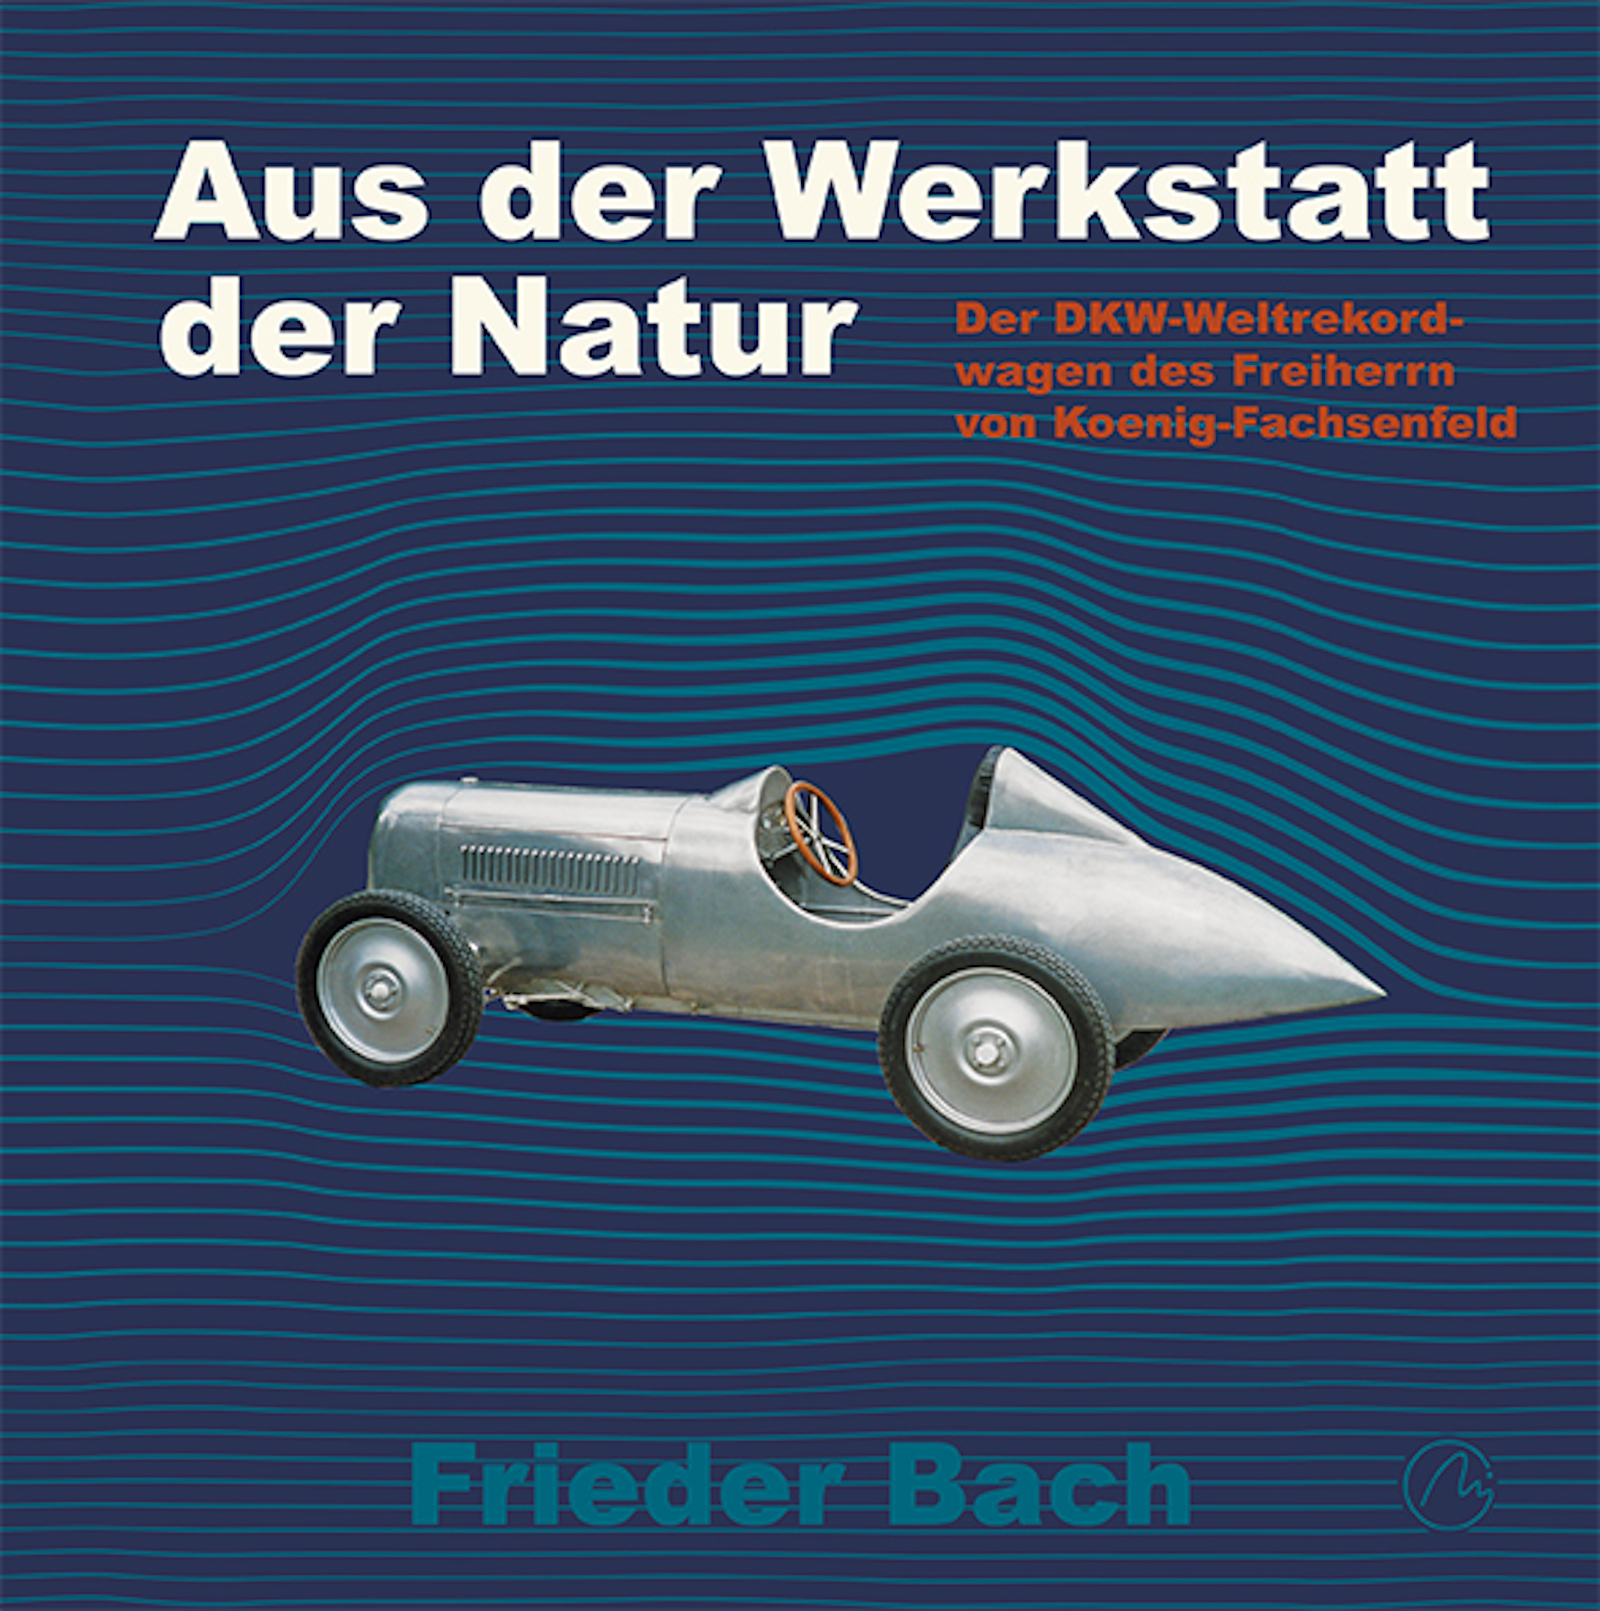 Cover des Buches "Der DKW-Weltekordwagen des Freiherrn Reinhard von Koenig-Fachsenfeld"